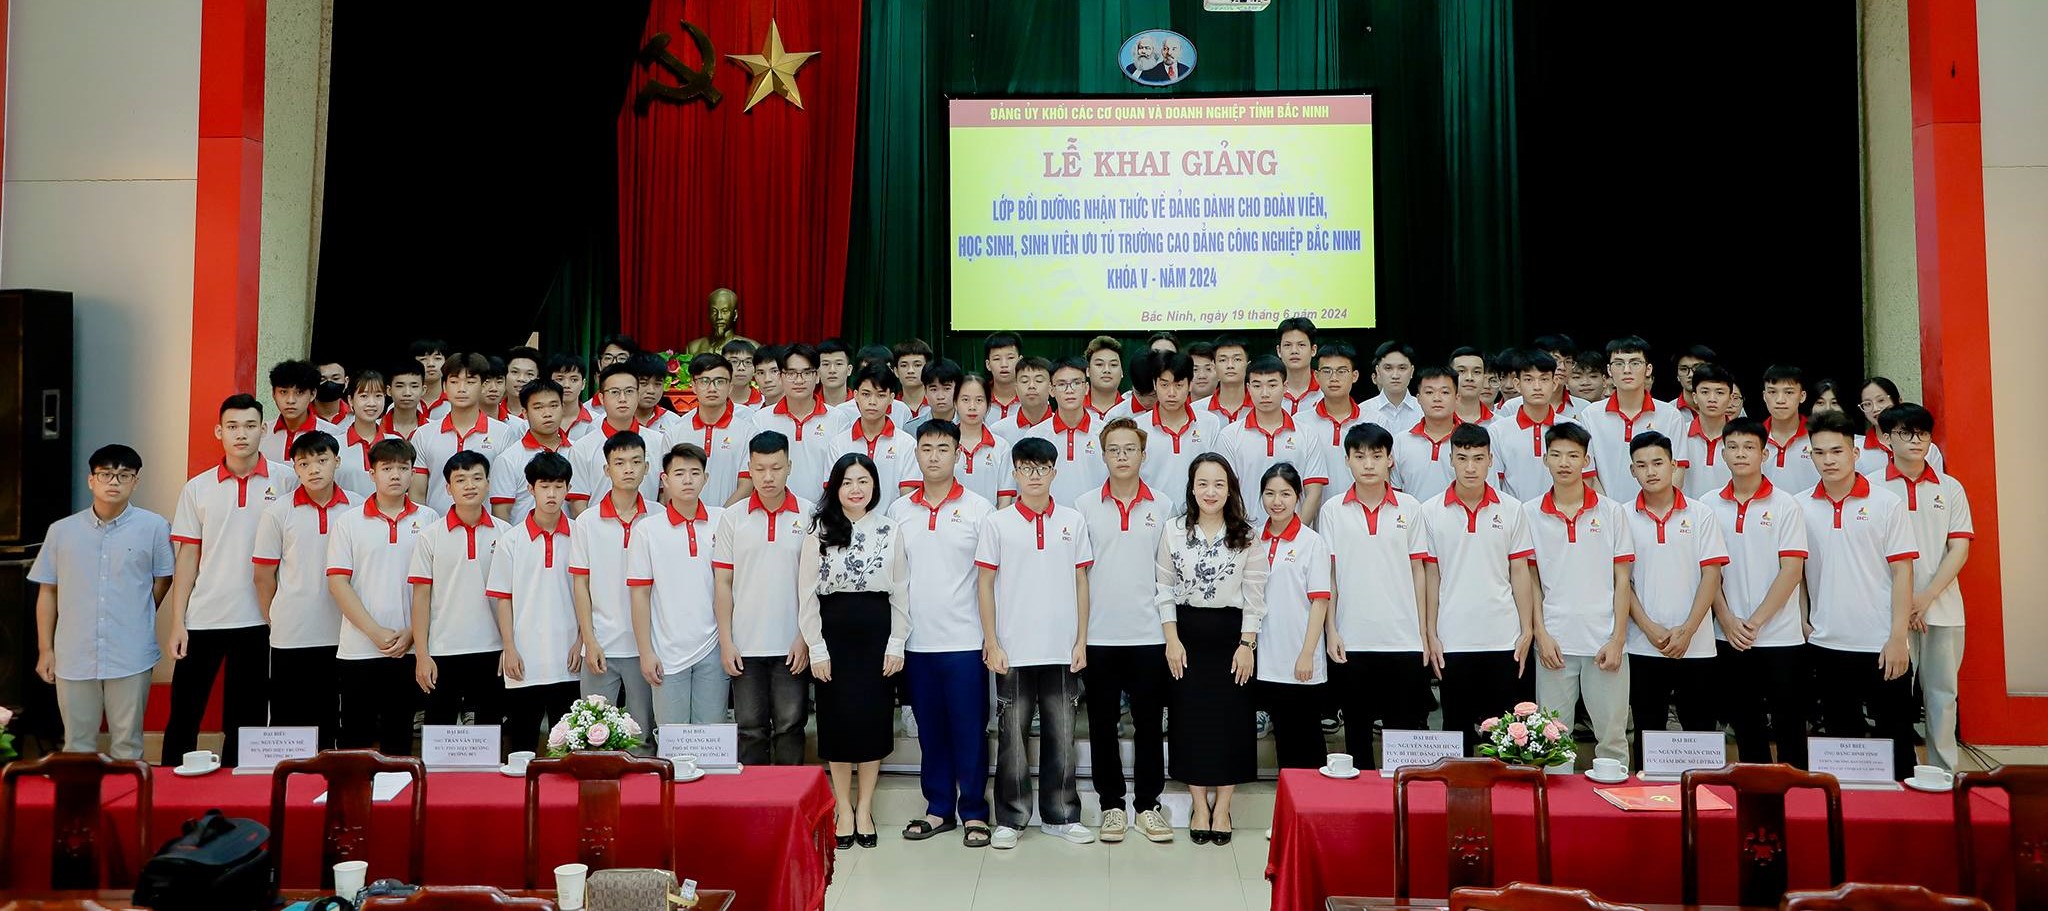 89 đoàn viên, sinh viên ưu tú tỉnh Bắc Ninh tham gia lớp  Bồi dưỡng nhận thức về Đảng